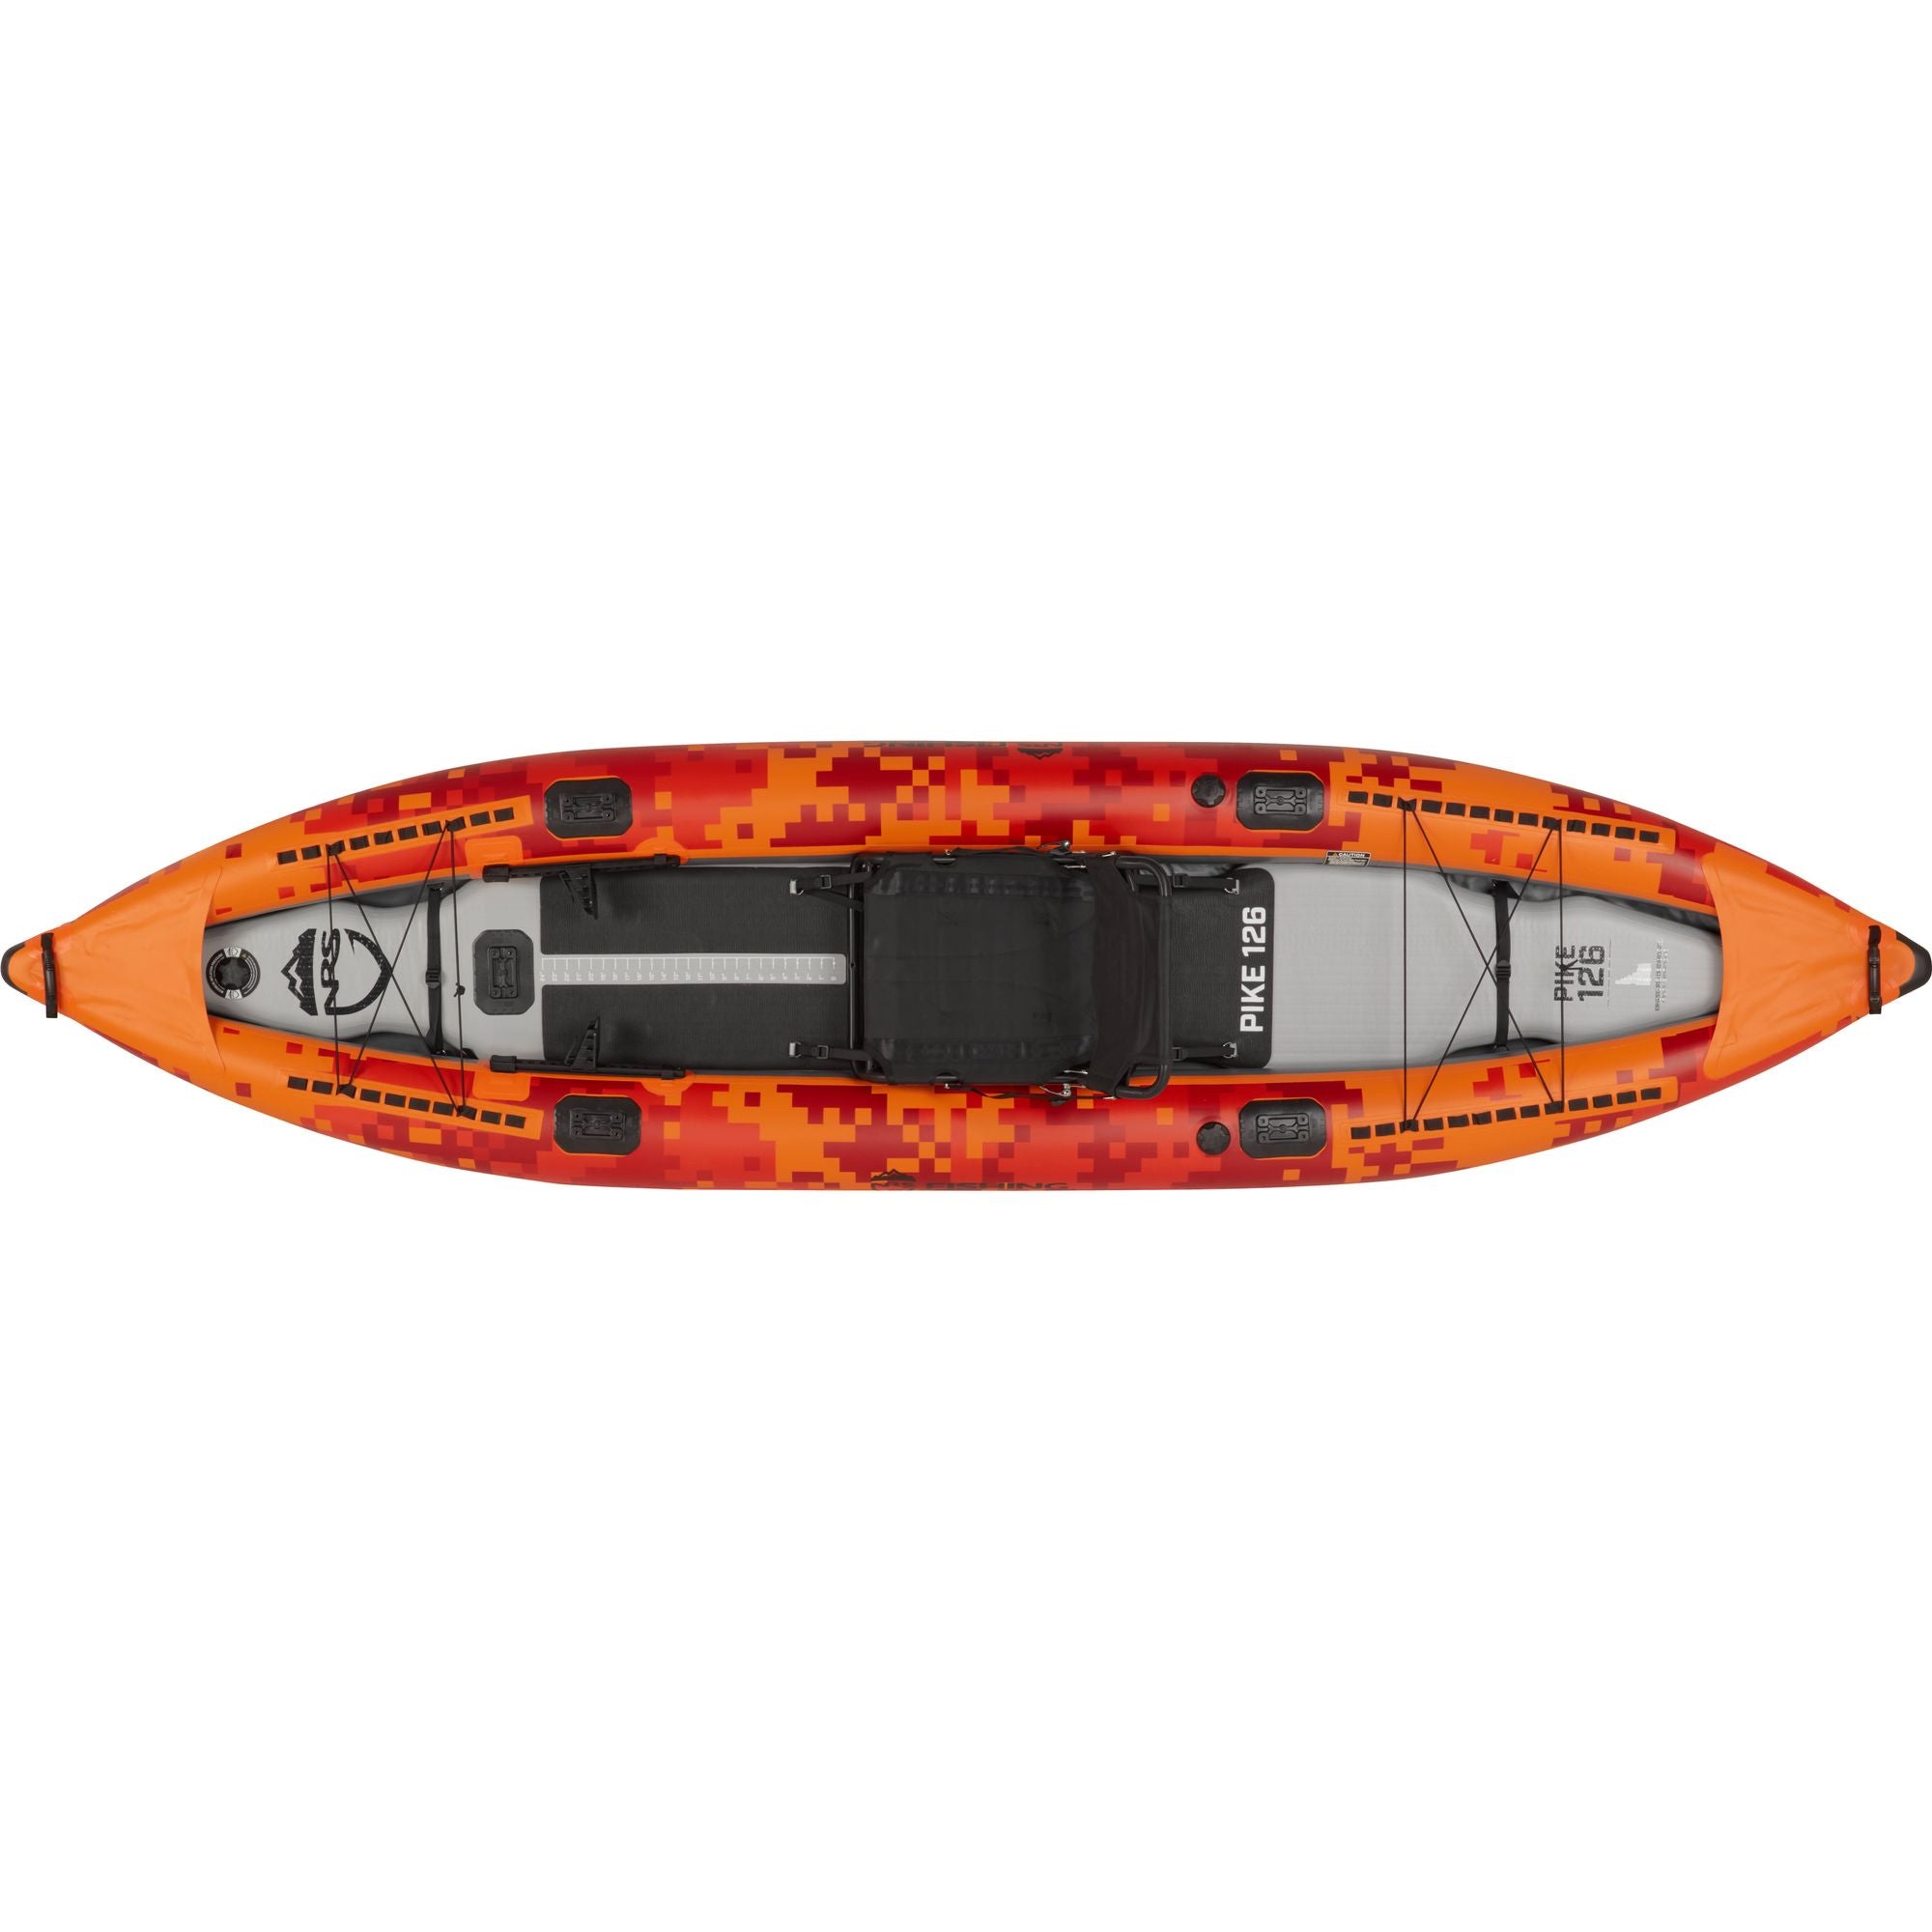 NRS Inflatable Kayak Fishing Seat